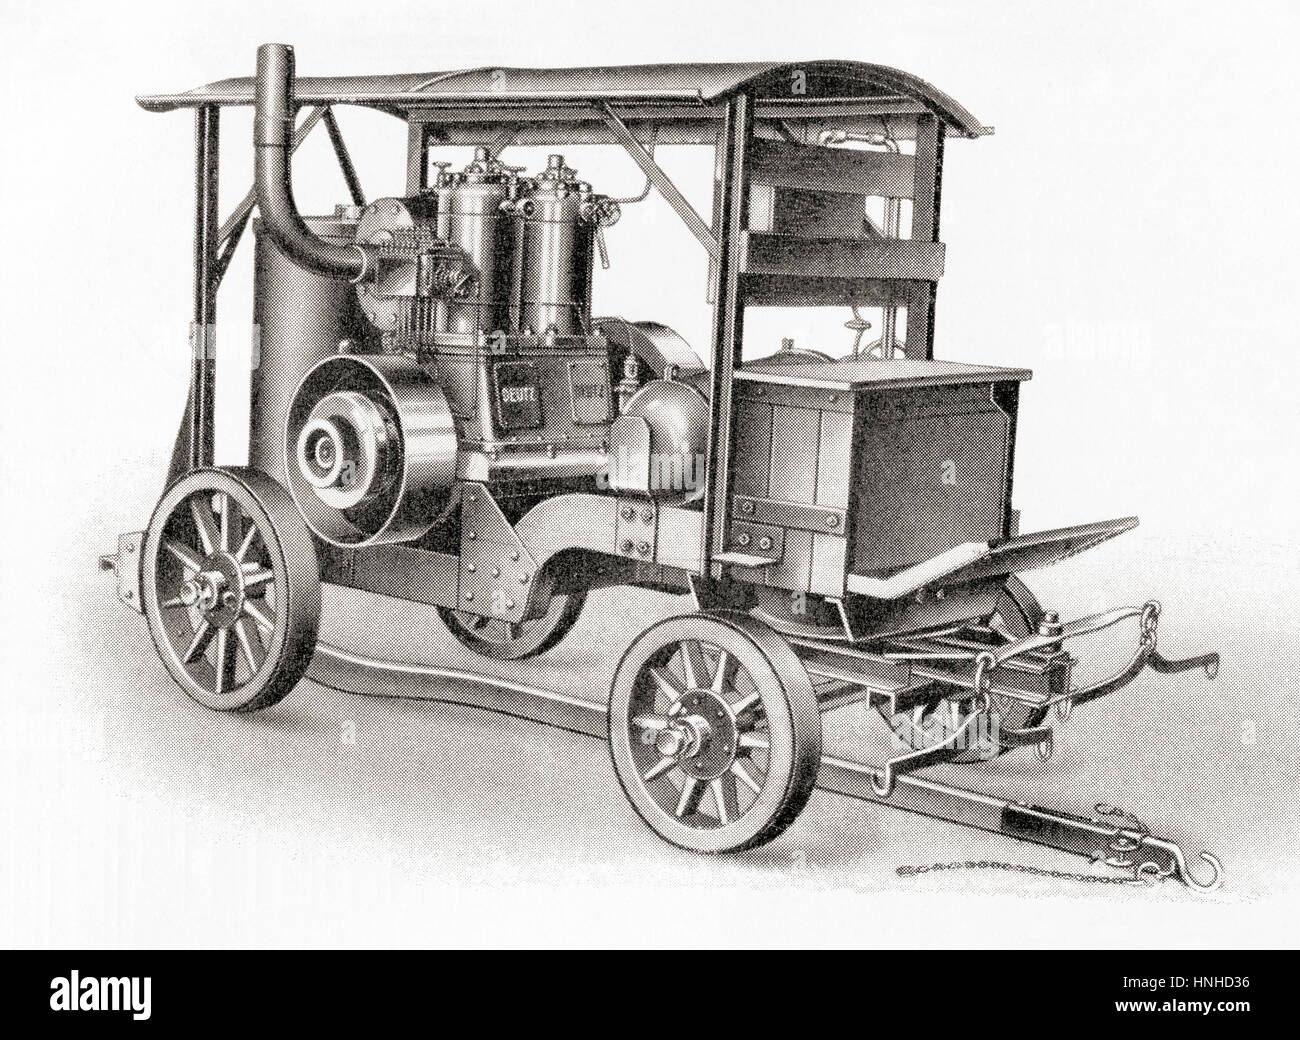 Ein Motor Lokomotive mit einem stehenden Motor für flüssige Brennstoffe.  Aus Meyers Lexikon veröffentlicht 1927. Stockfoto